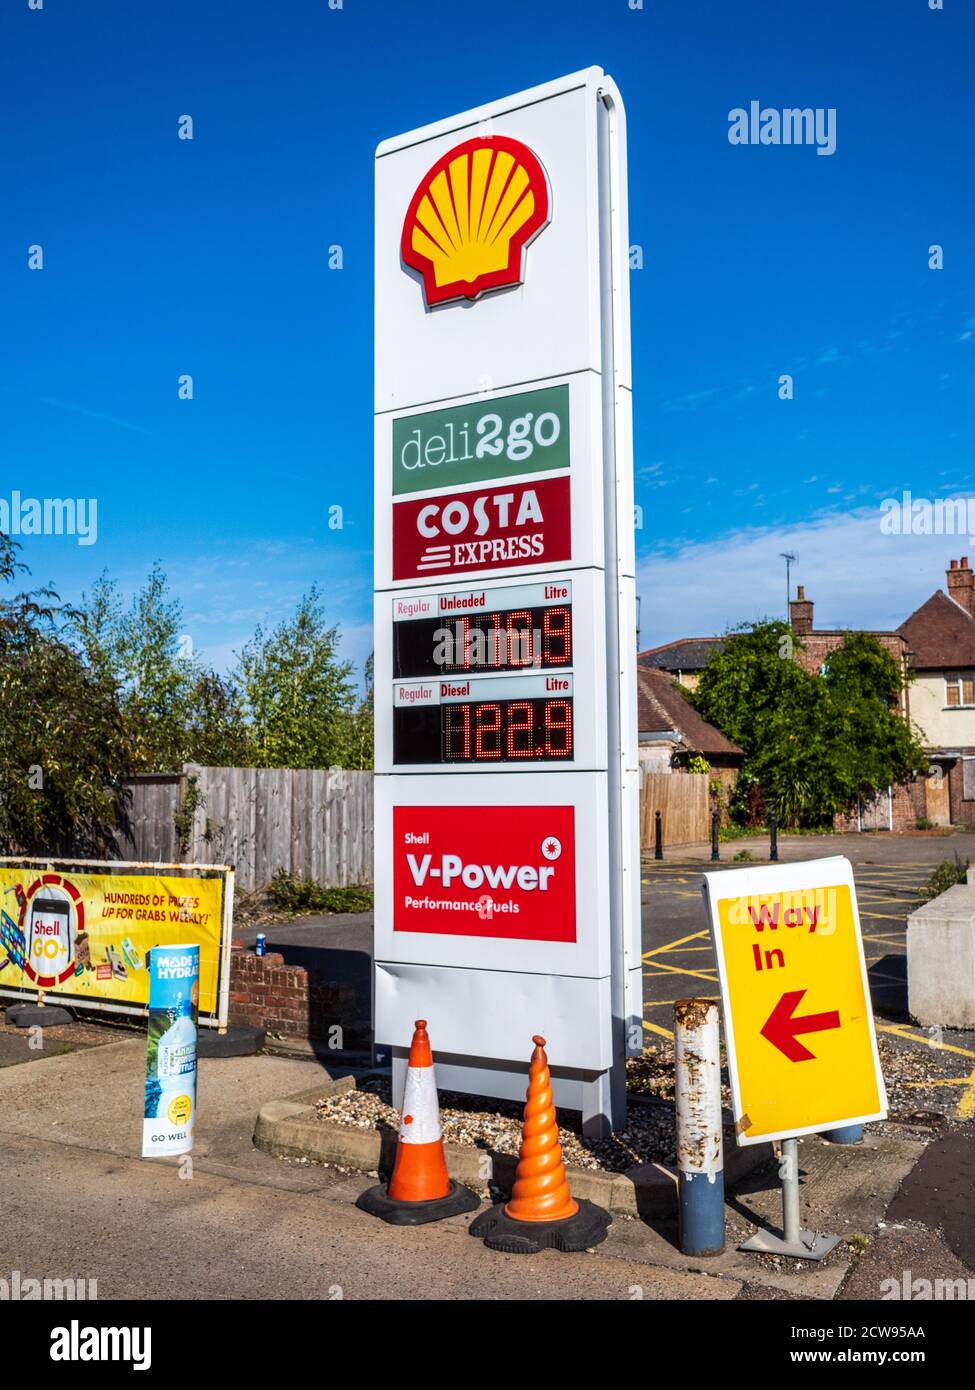 Shell Garage Sign - Shell Tankstelle Zeichen mit Kraftstoffpreisen und Garageneinrichtungen. Shell-Schild. Stockfoto